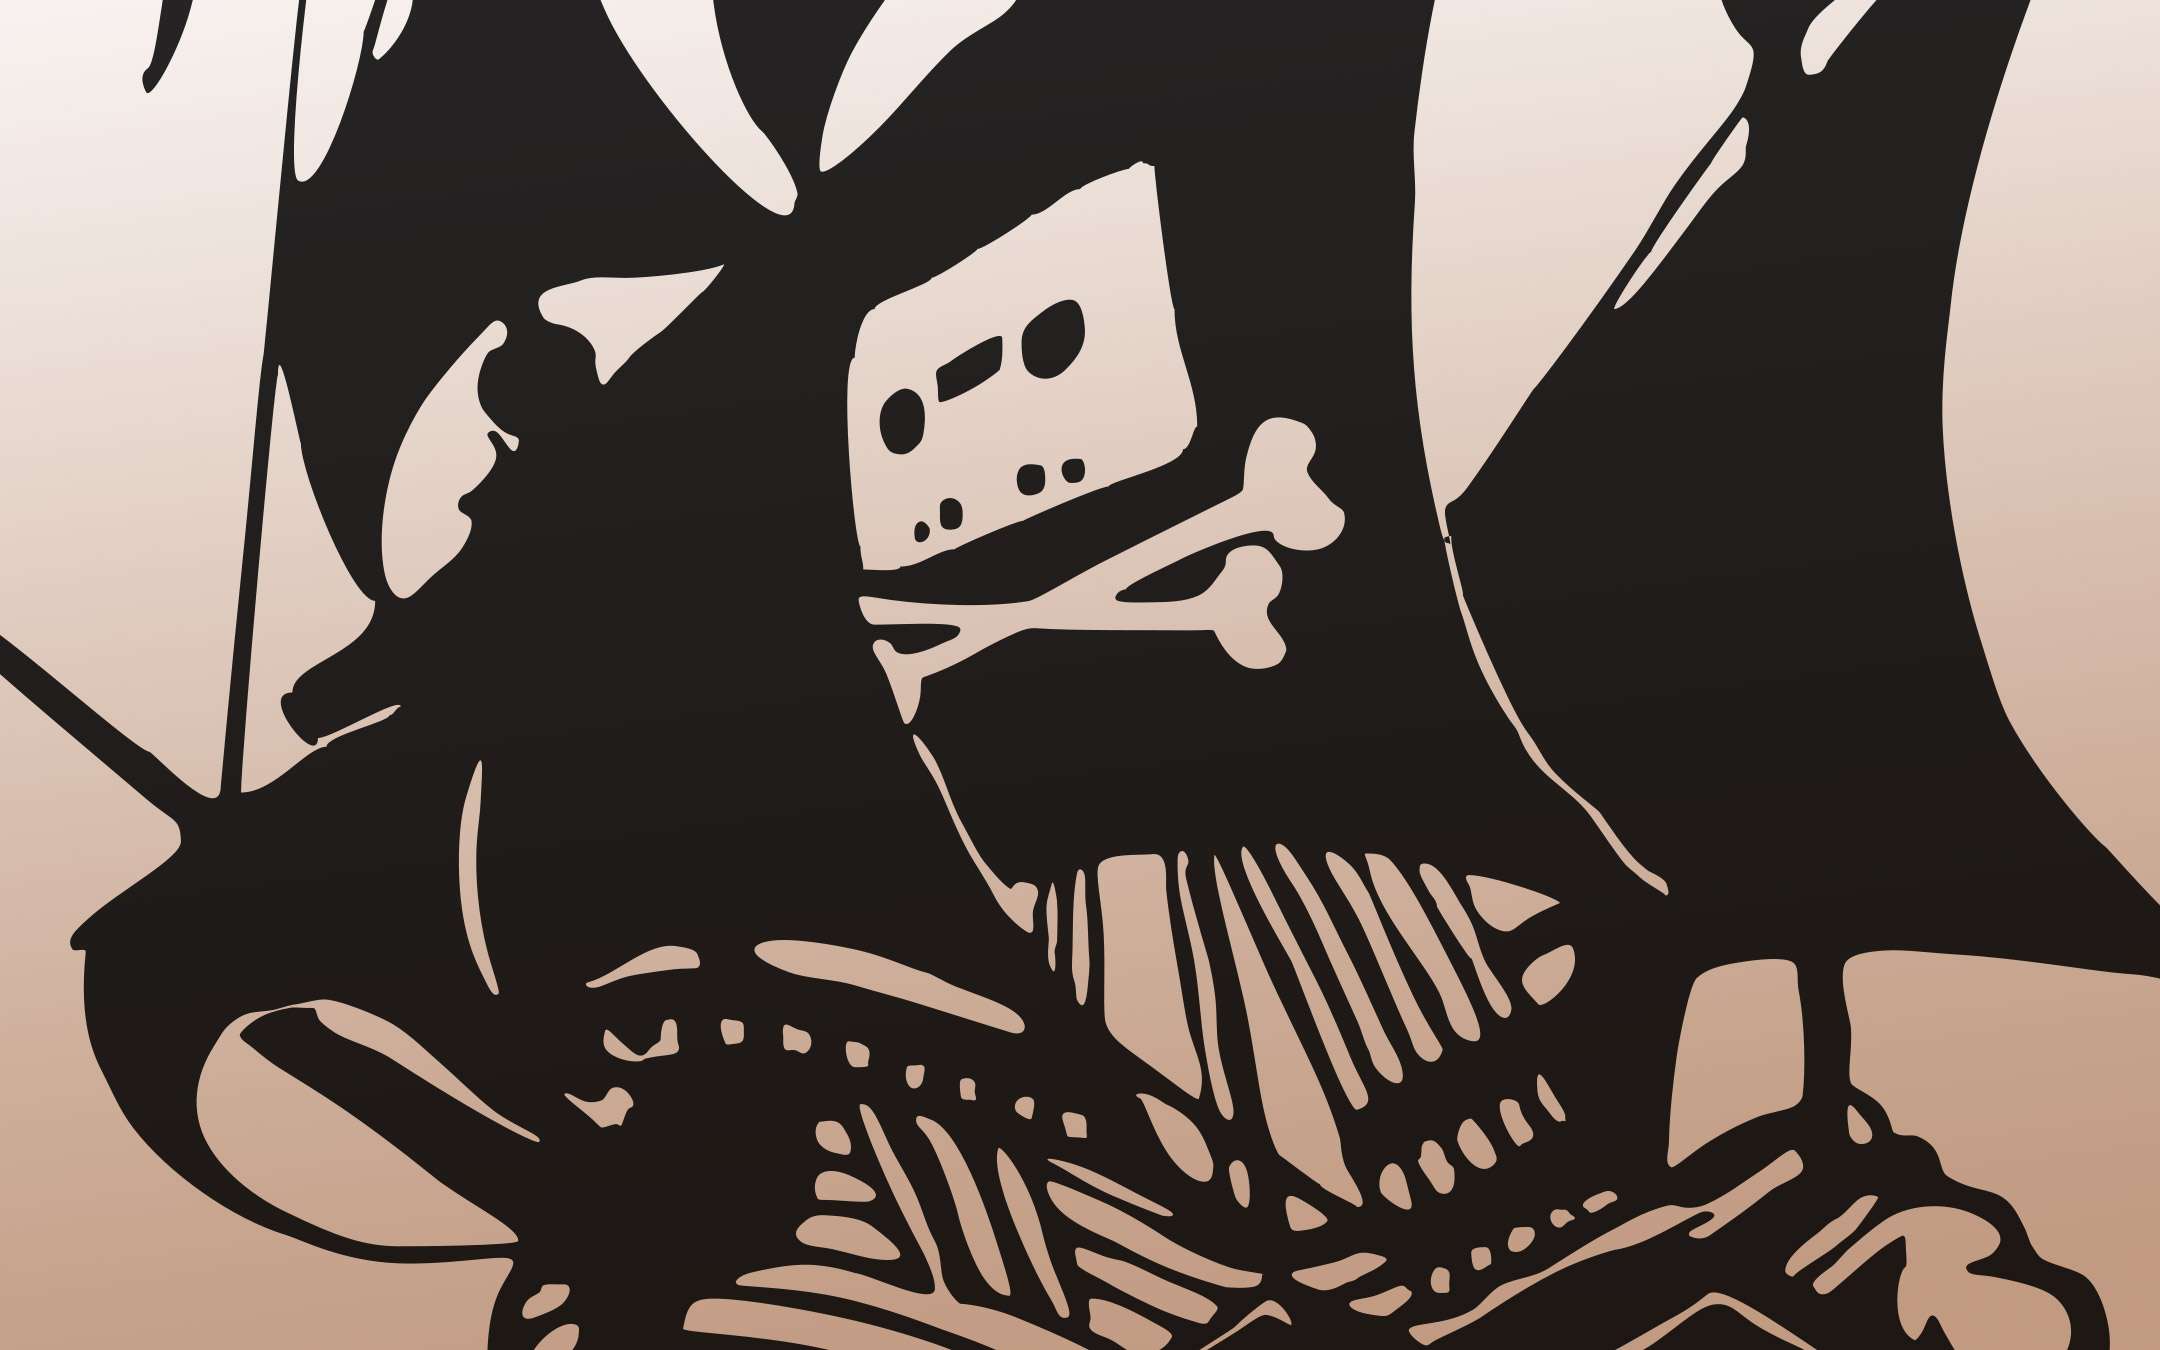 Domínio do Pirate Bay é usado em bizarra campanha de financiamento